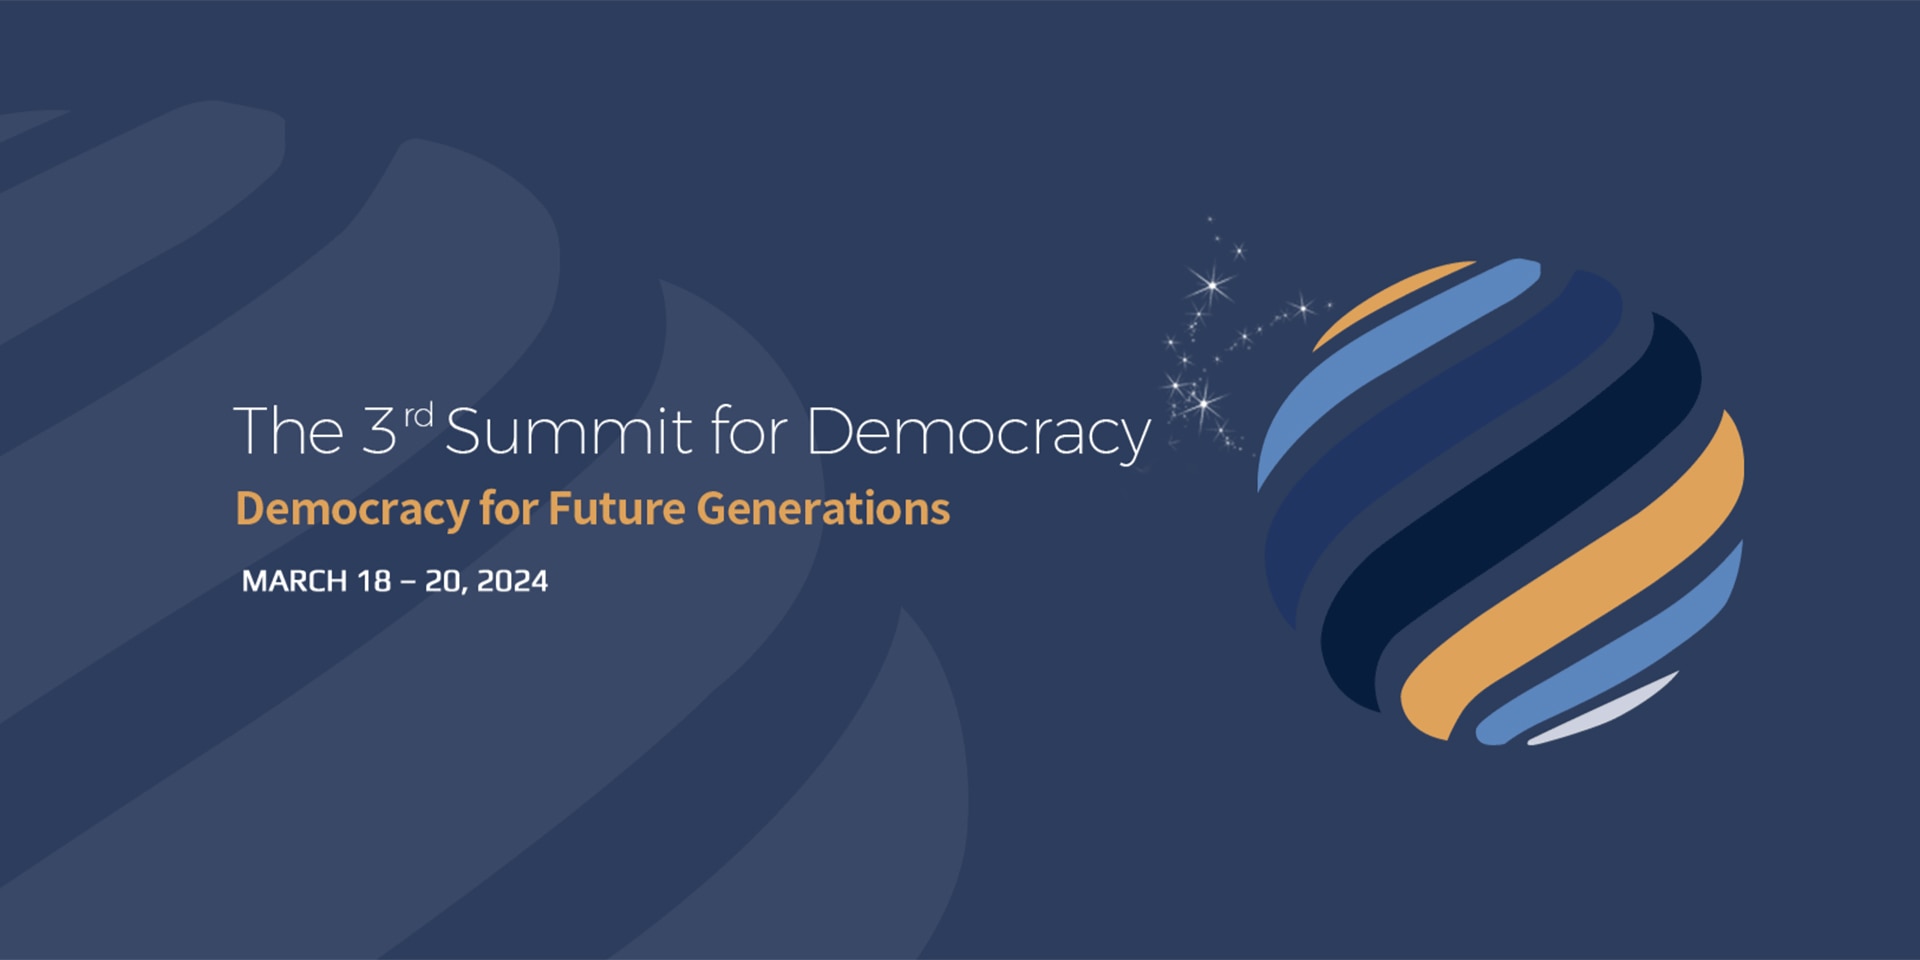 La planète est représentée par des traits jaunes, bleus et noirs. On peut lire à gauche «La démocratie pour les générations futures», le thème auquel sera consacré le Sommet pour la démocratie organisé à Séoul.